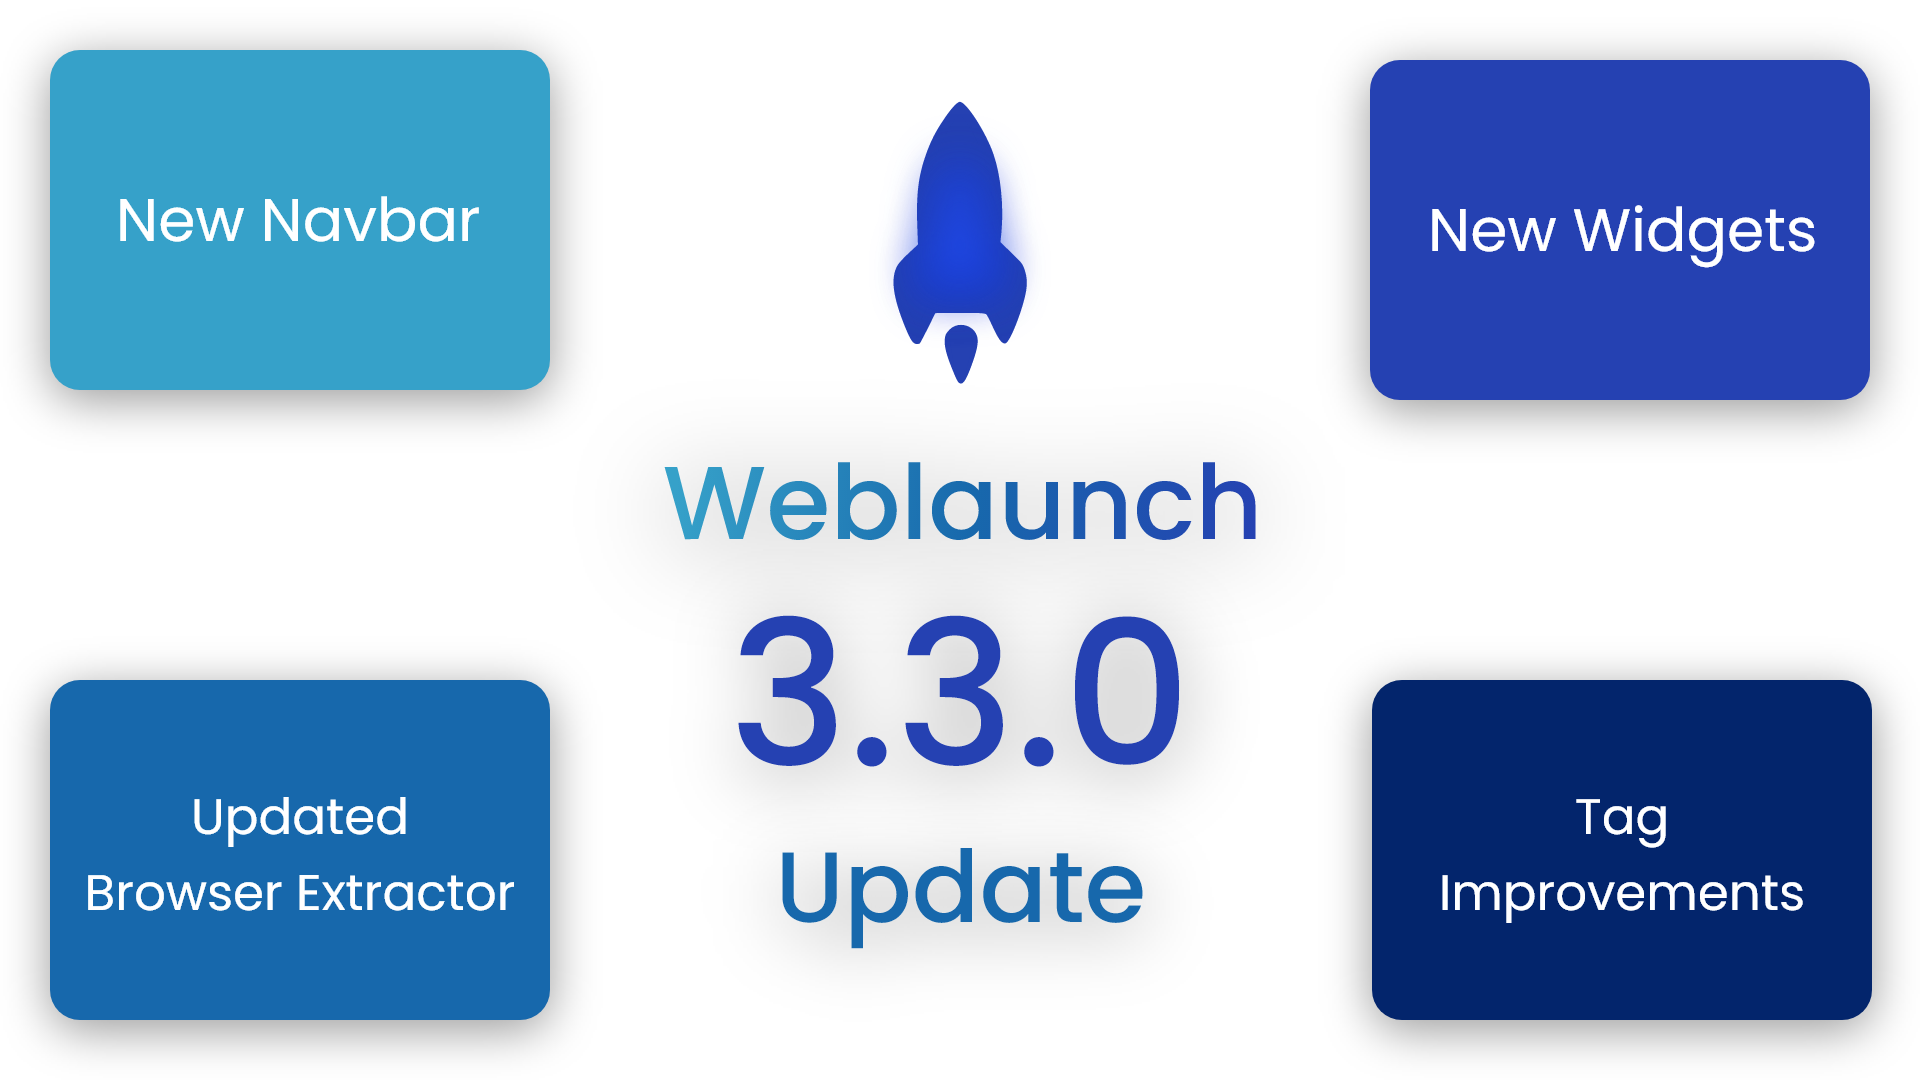 Weblaunch 3.3.0 Update